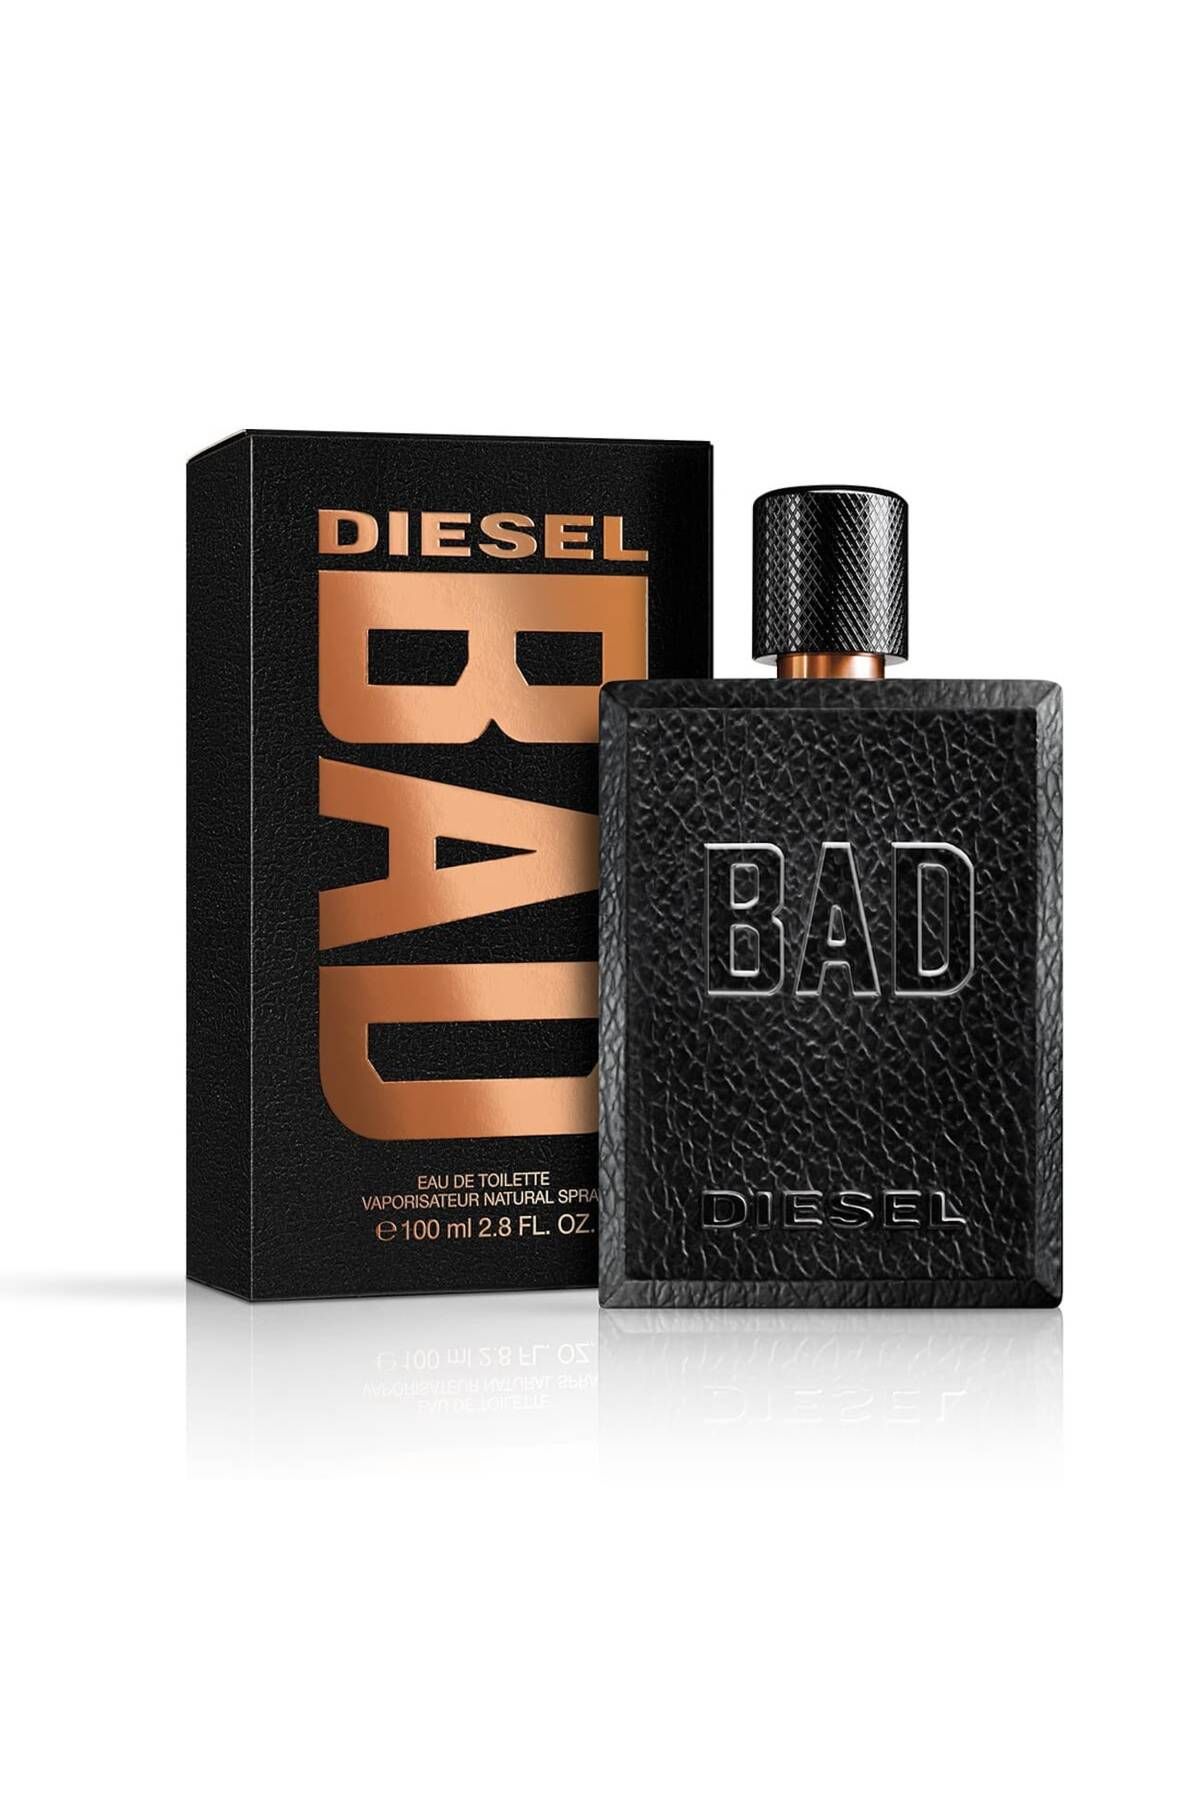 Diesel Bad Edt 100 ml Erkek Parfüm 3614273356053